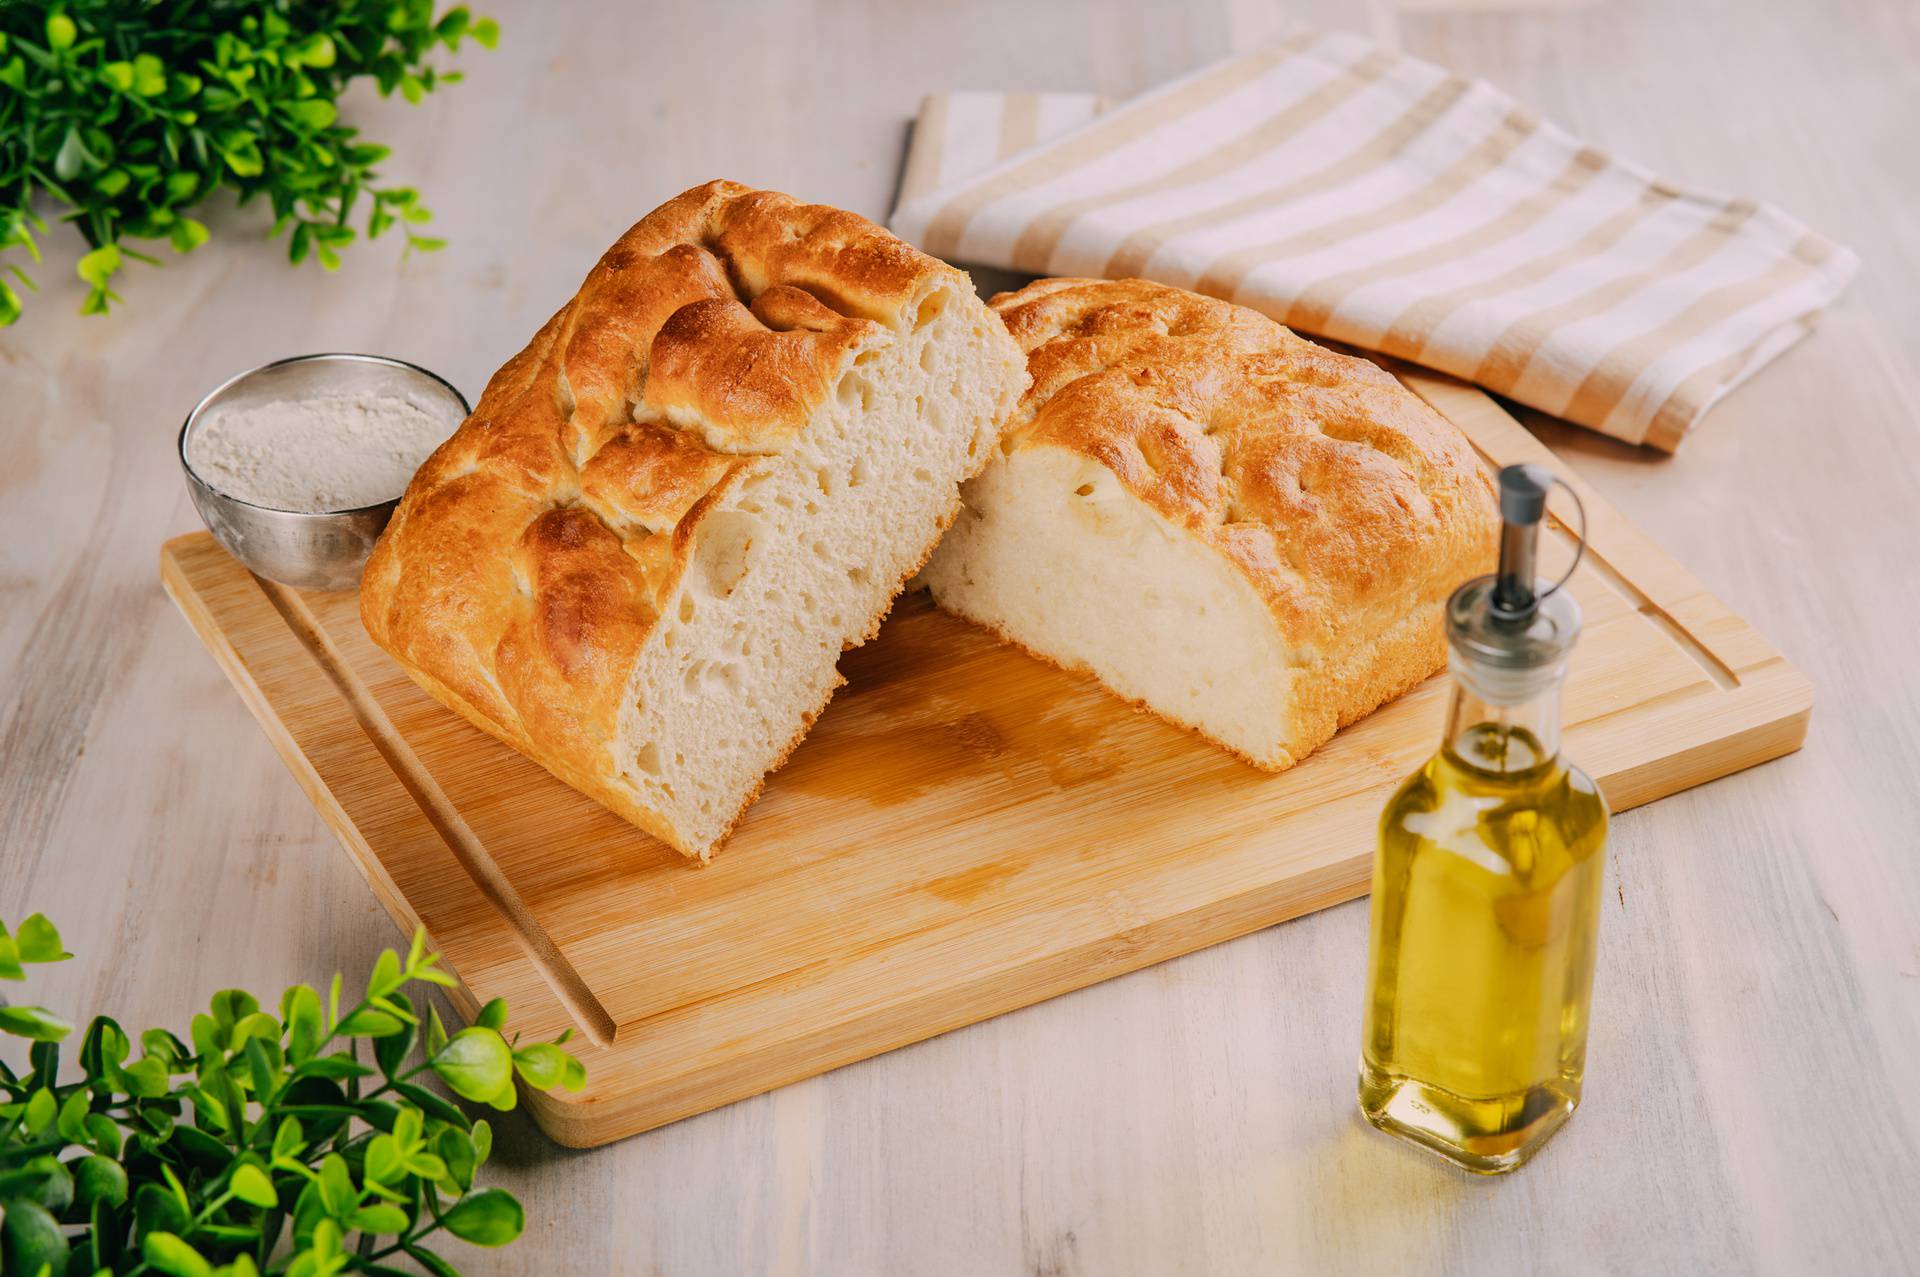 Mlinar u ponudi ima najpopularniji kruh na svijetu. Zaljubili smo se na prvi pogled